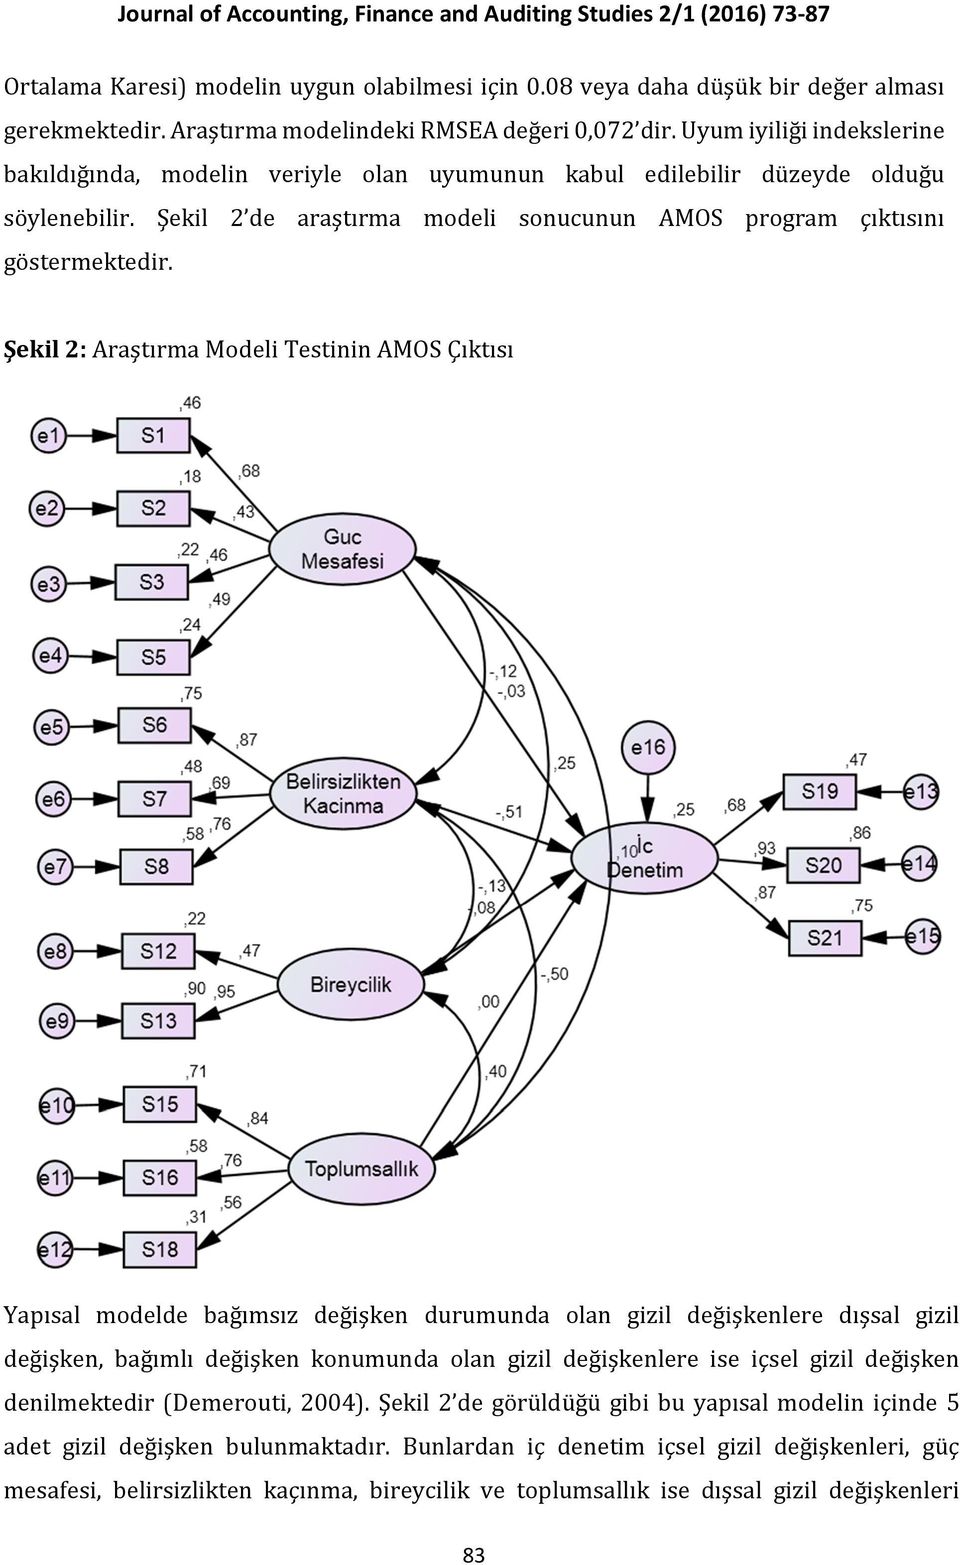 Şekil 2: Araştırma Modeli Testinin AMOS Çıktısı Yapısal modelde bağımsız değişken durumunda olan gizil değişkenlere dışsal gizil değişken, bağımlı değişken konumunda olan gizil değişkenlere ise içsel